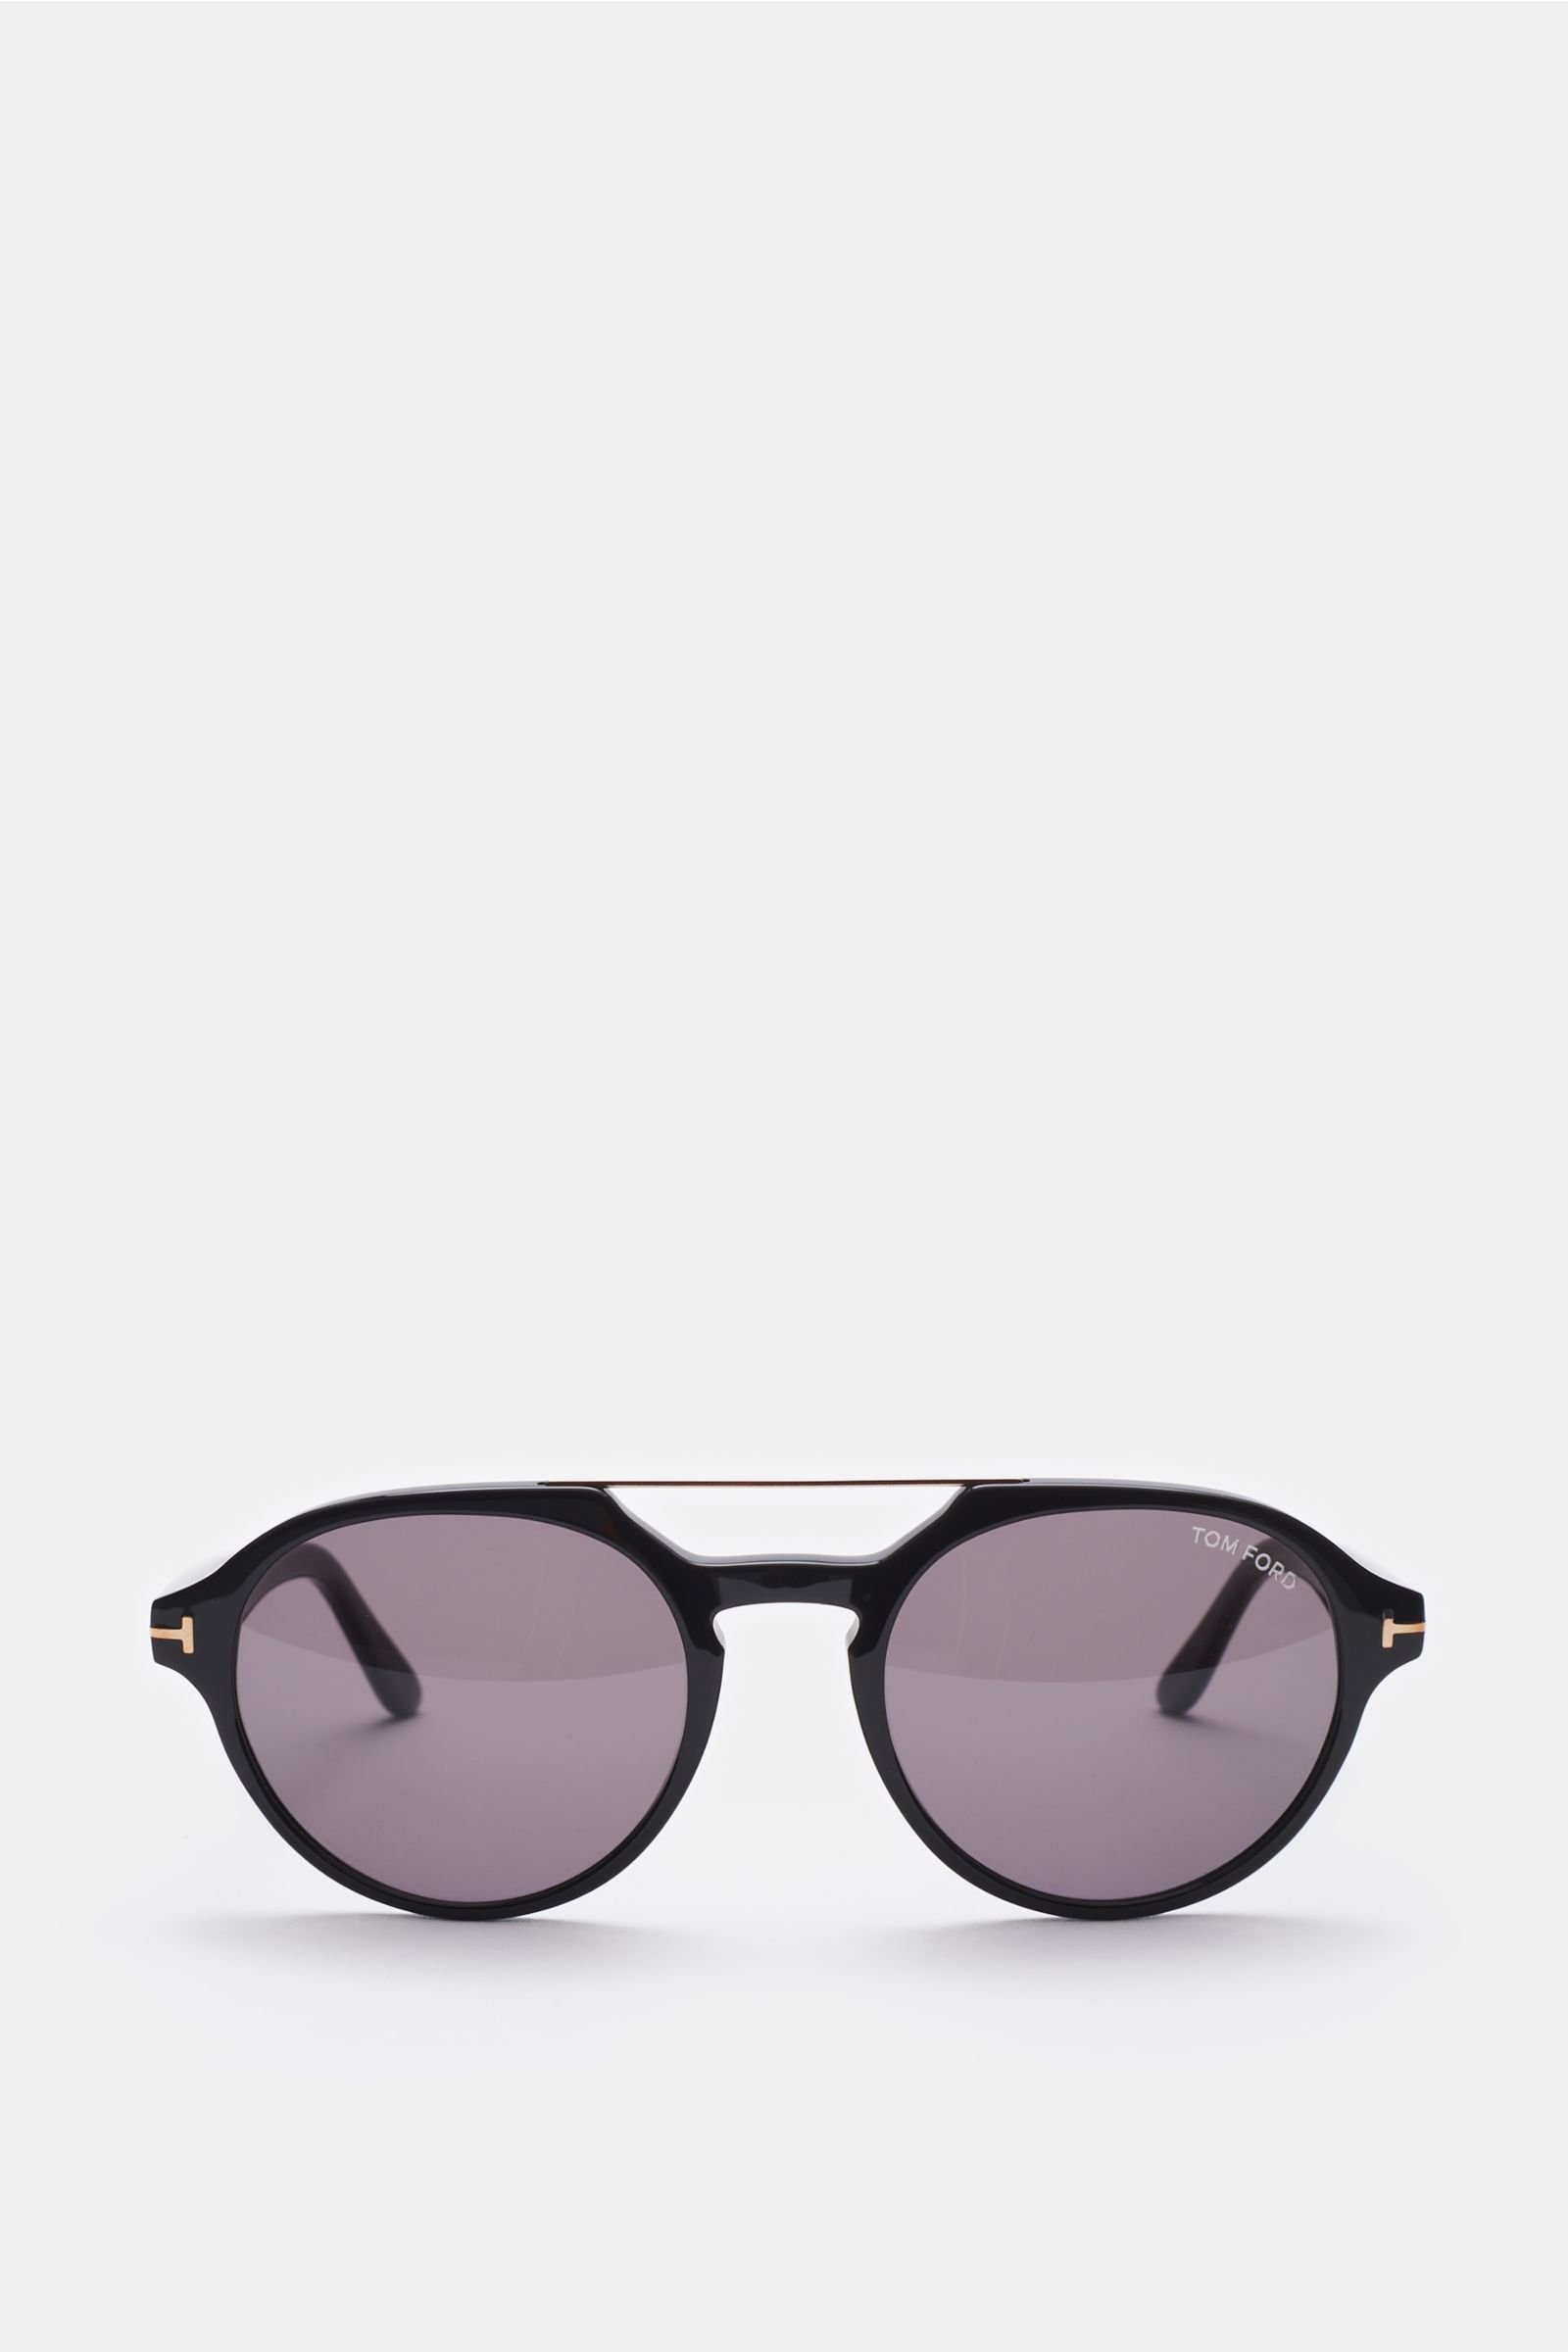 Sonnenbrille 'Stan' schwarz/grau